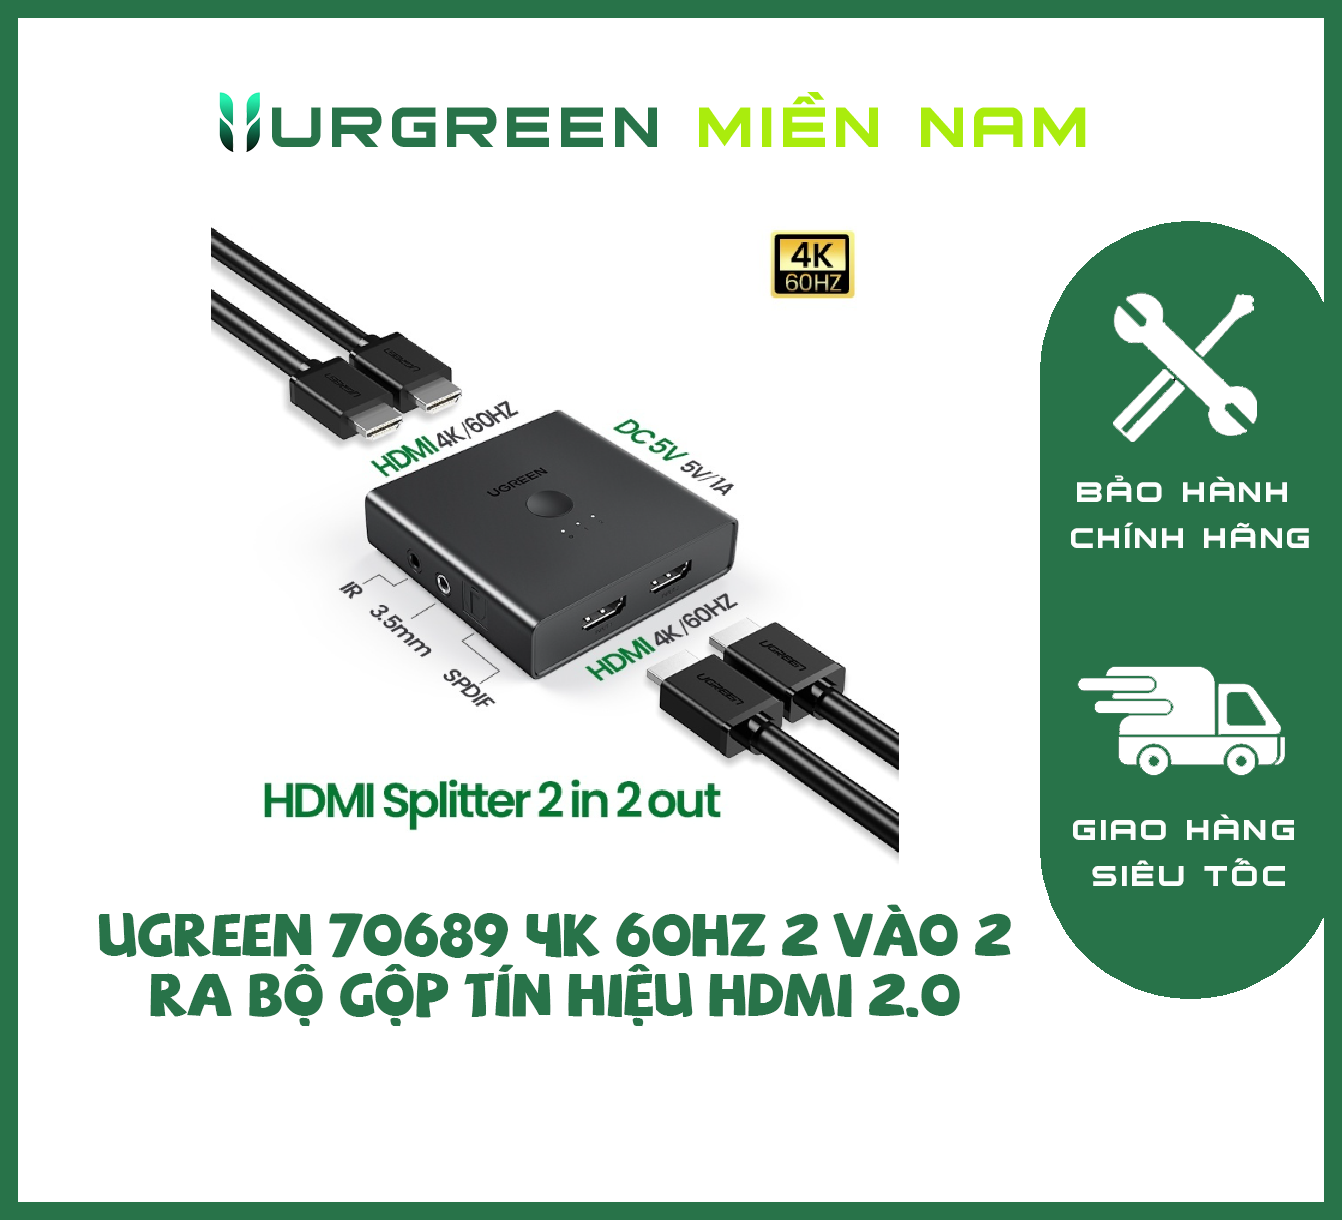 Ugreen 70689 4K 60hz 2 vào 2 ra bộ gộp tín hiệu HDMI 2.0 màu đen CM318